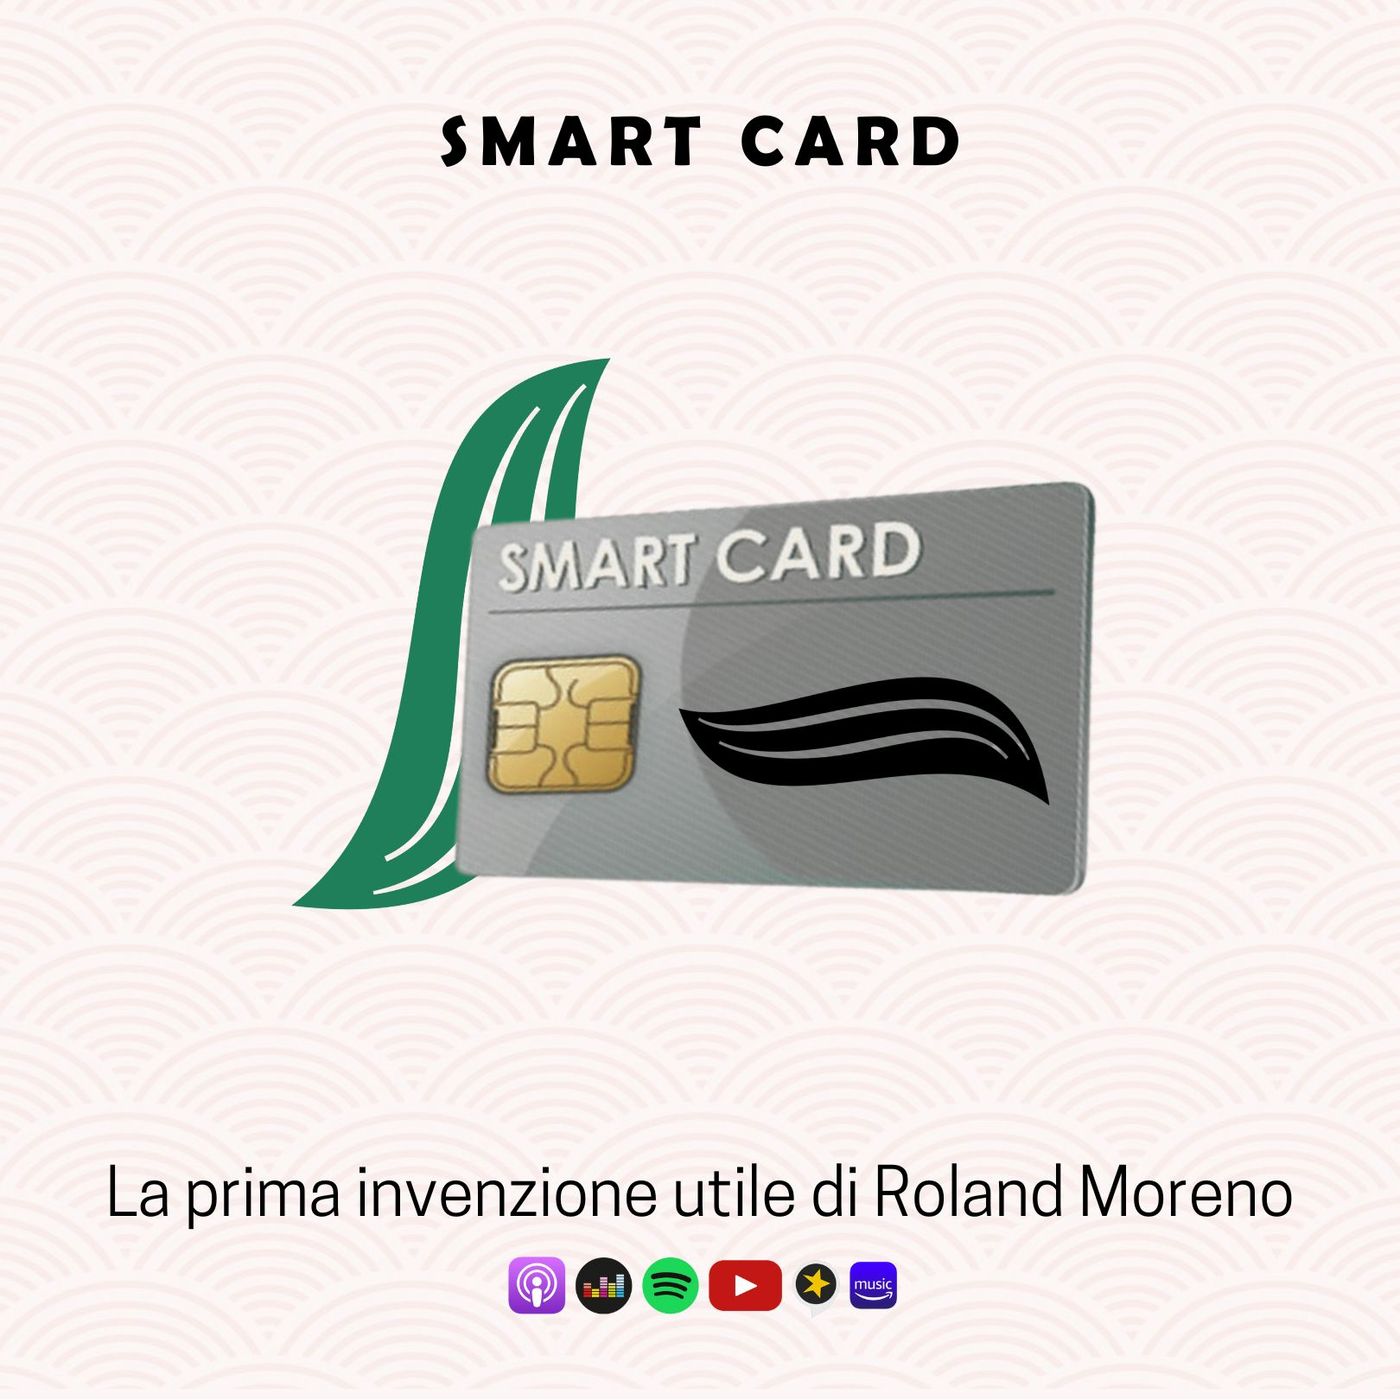 SMART CARD | La prima invenzione utile di Roland Moreno